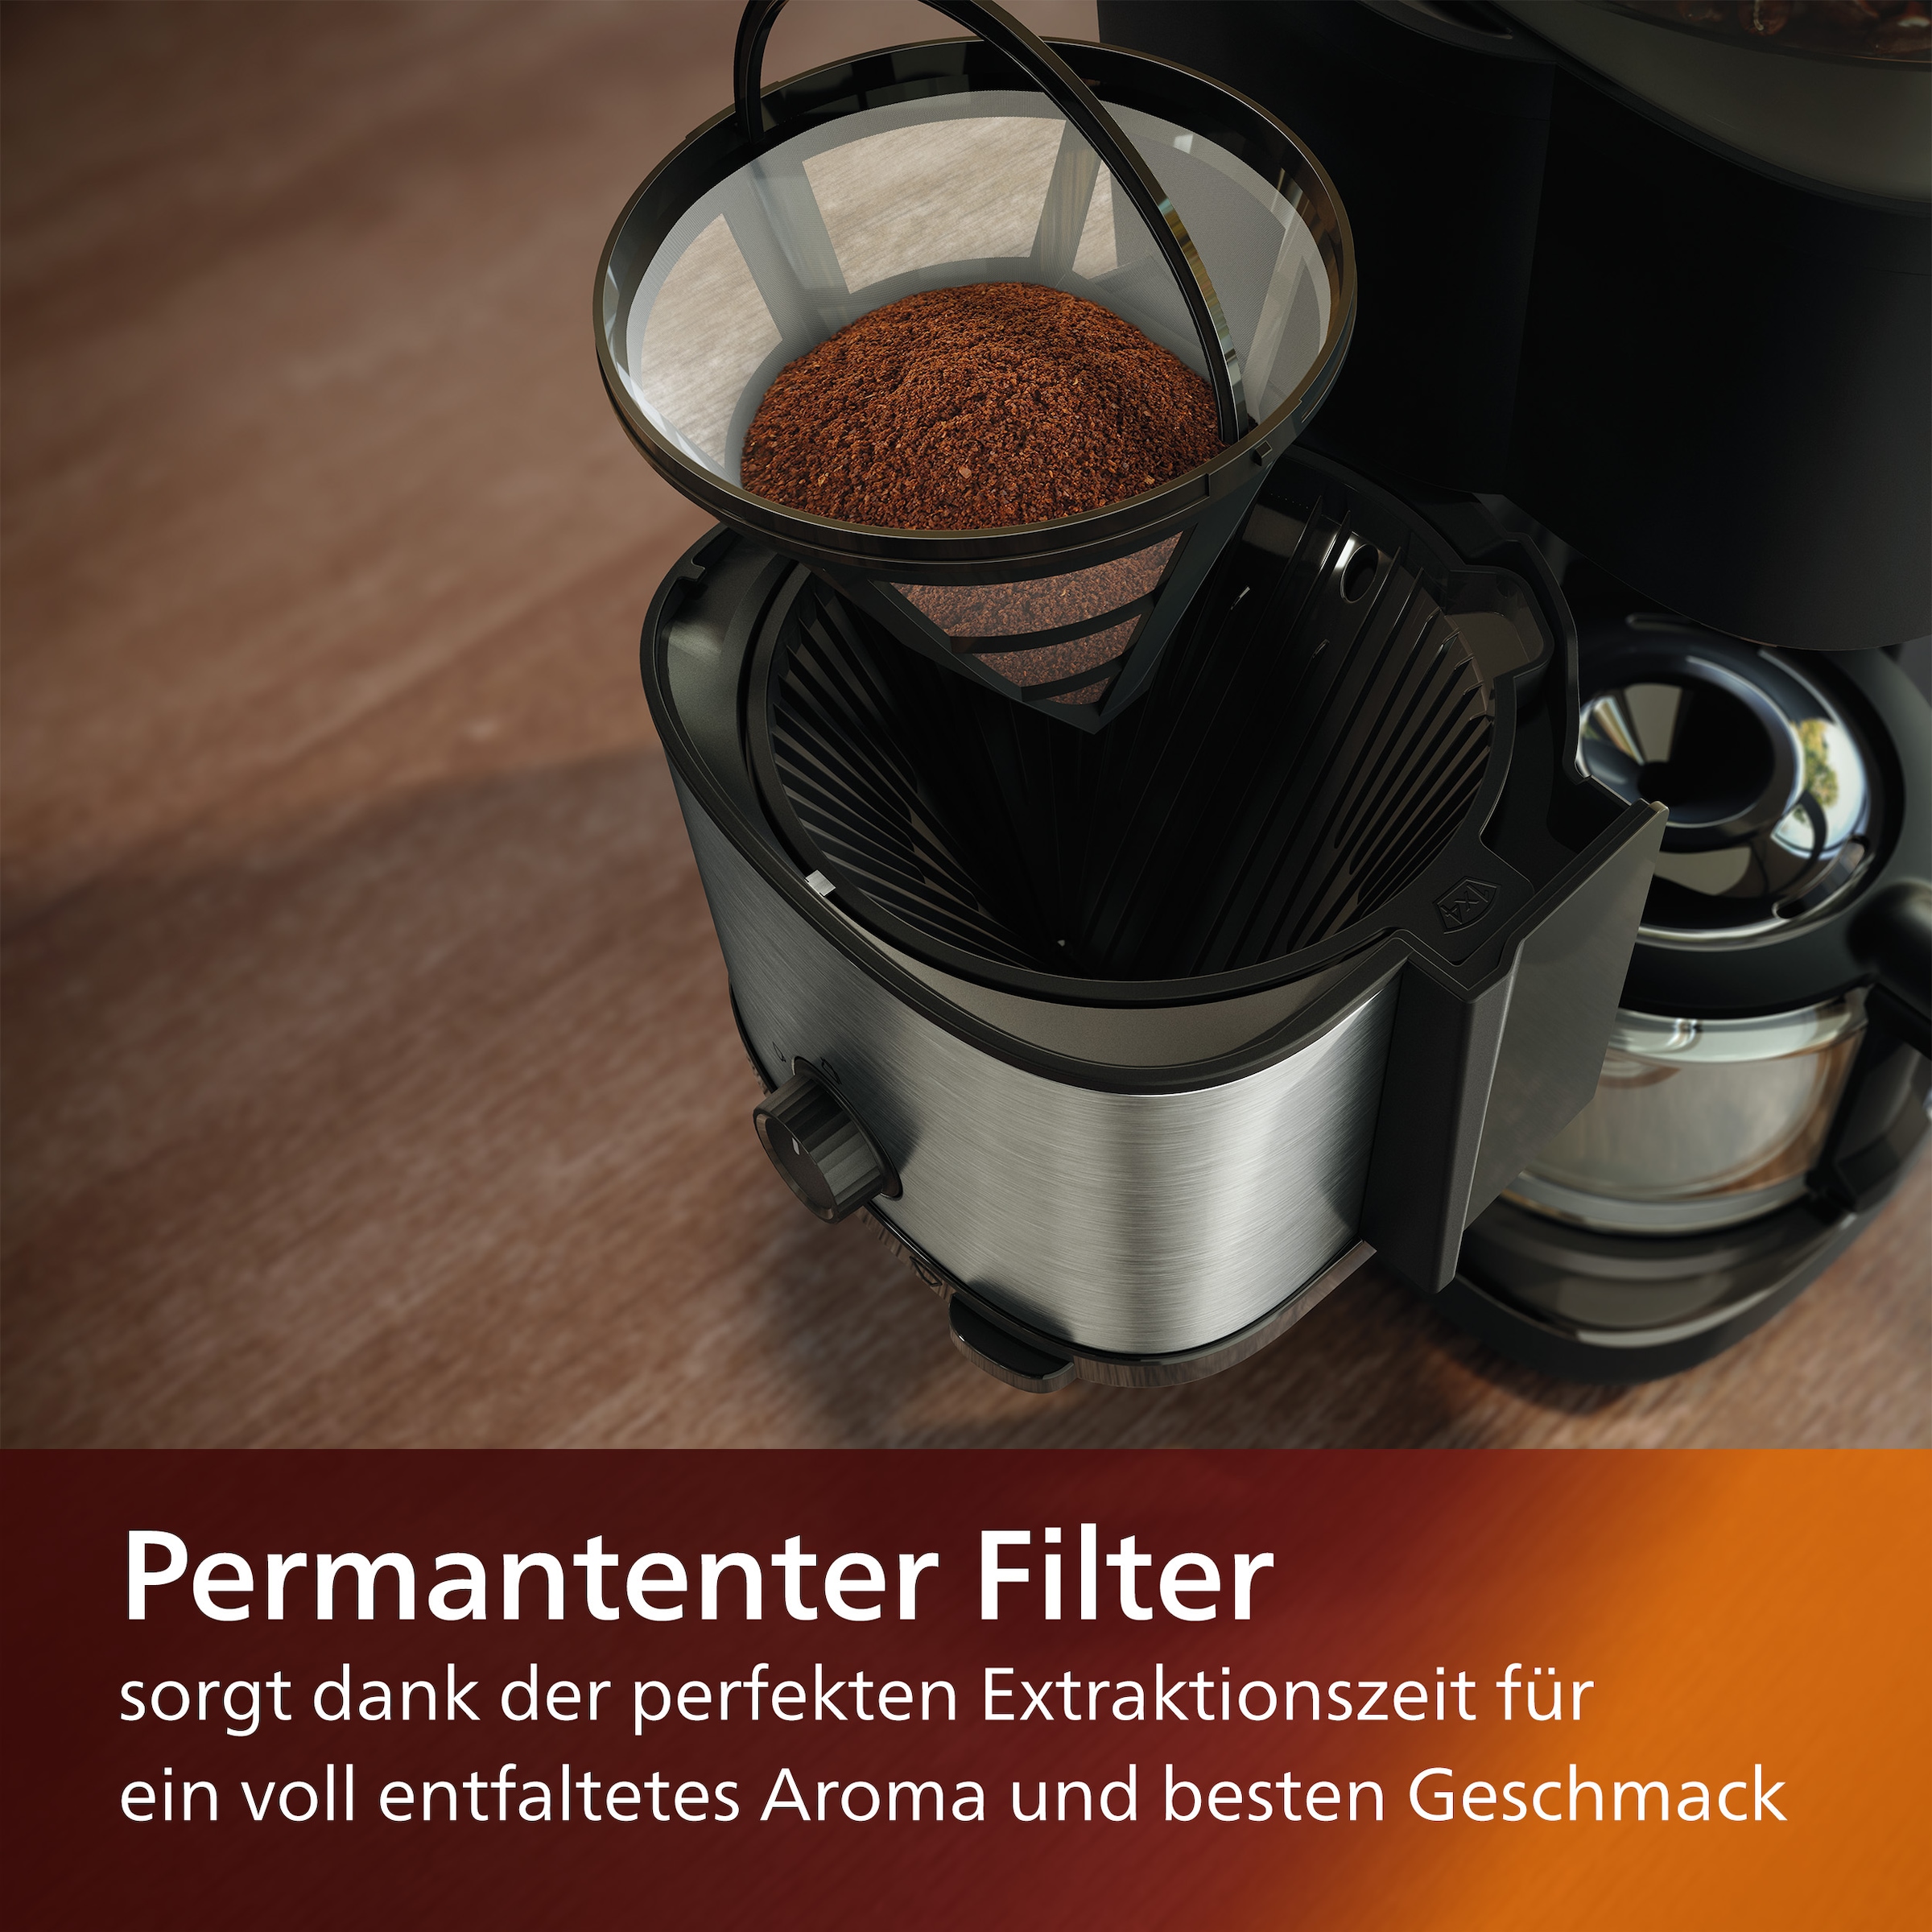 OTTO Kaffeemaschine Philips bei mit Dosierung »HD7900/50 Duo-Kaffeebohnenbehälter, mit Smart 1x4, All-in-1 Dosierlöffel inkl. und Permanentfilter, kaufen Mahlwerk Brew«,